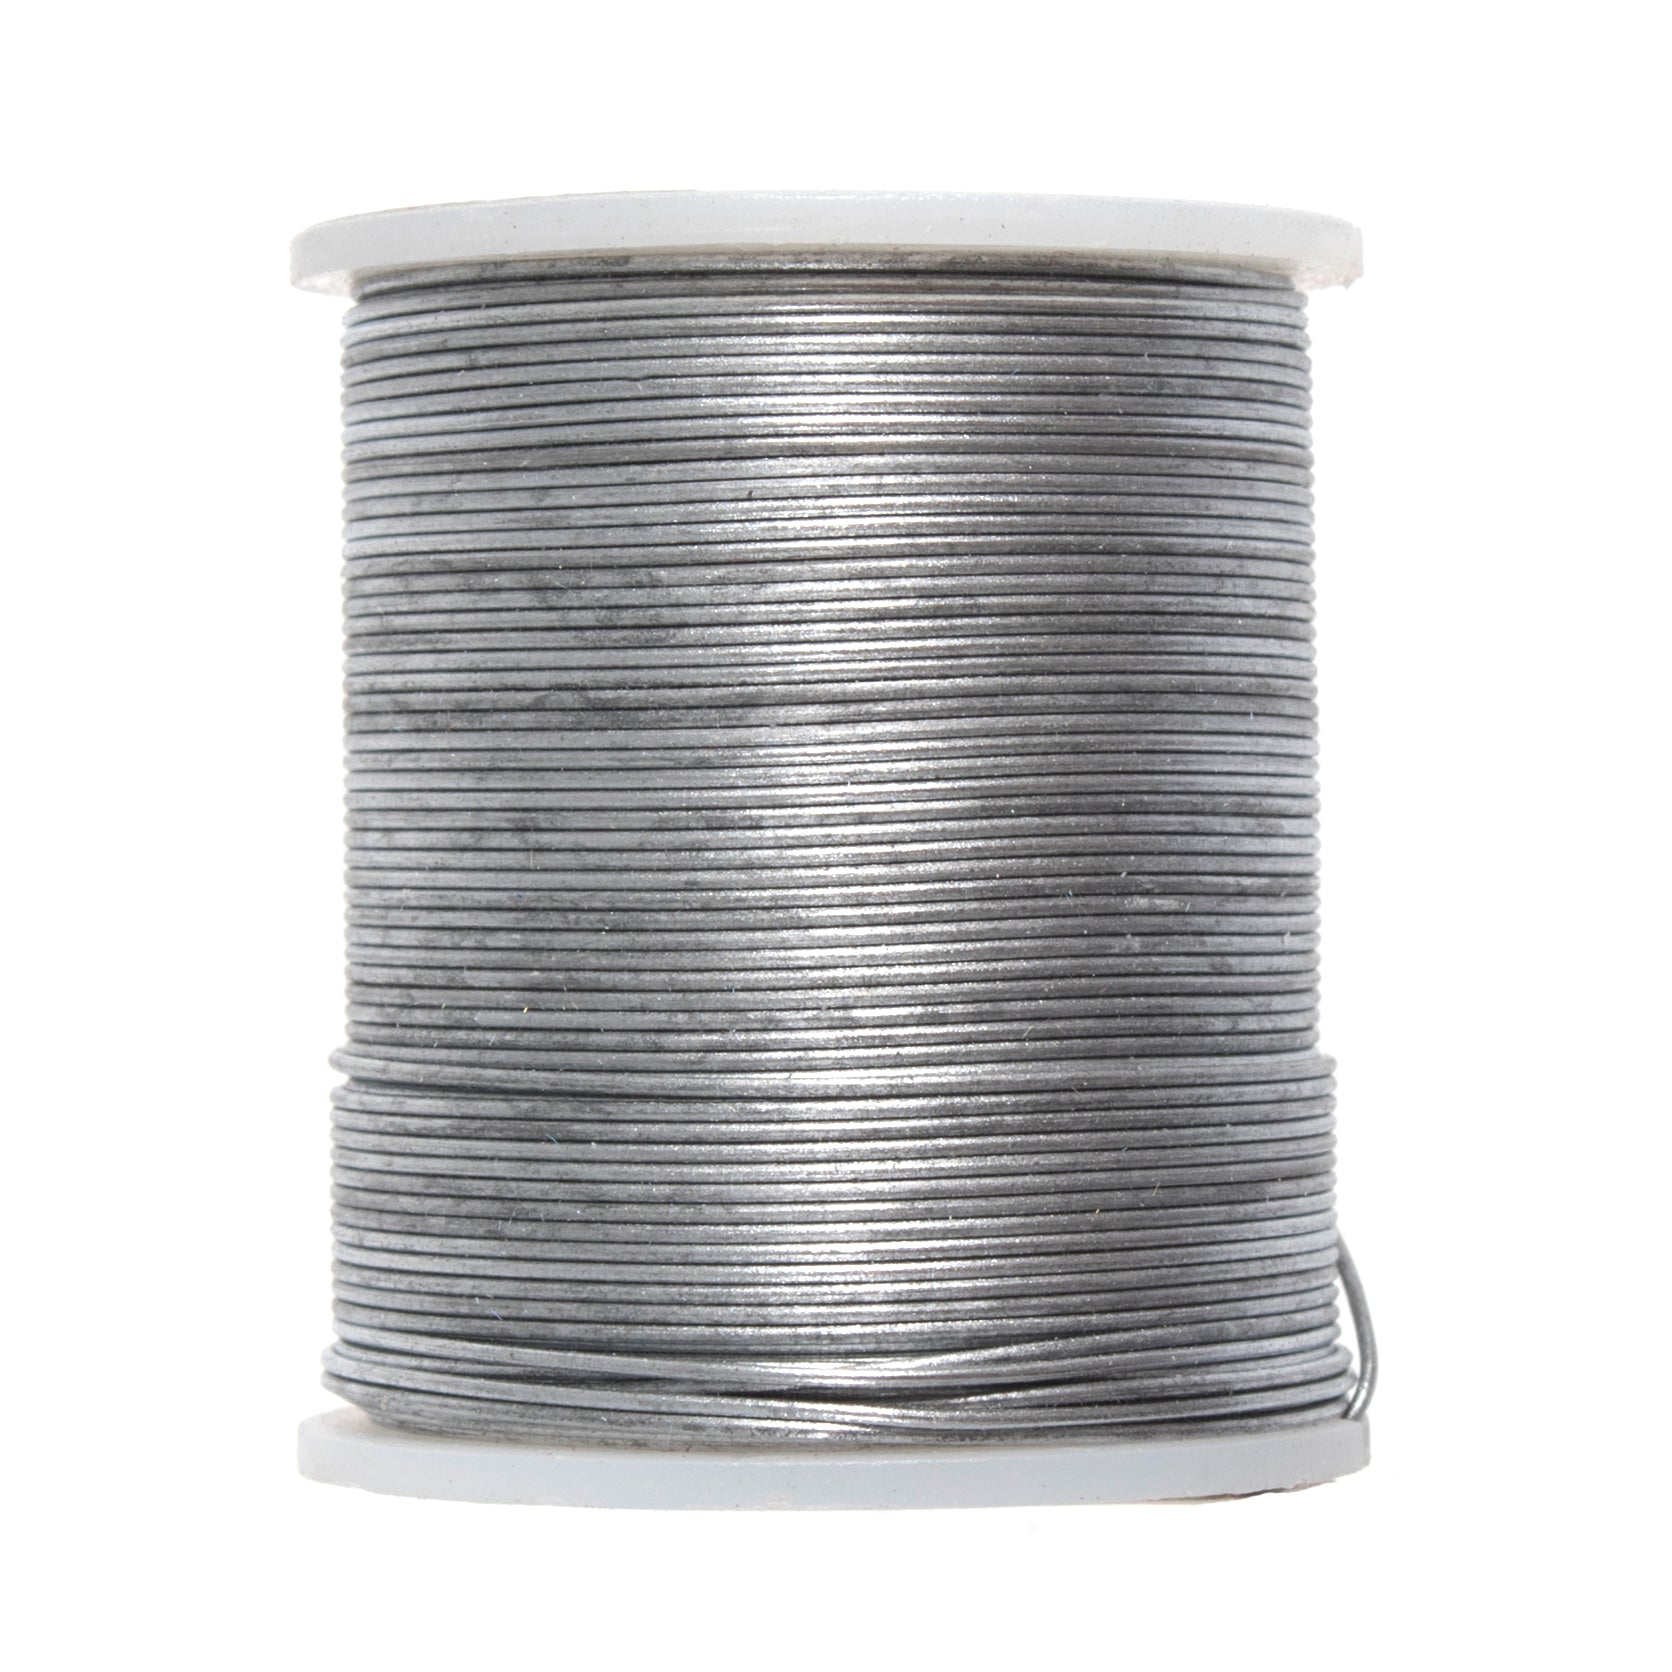 Silver Colour Wire 21m 24 Gauge / 0.5mm diameter